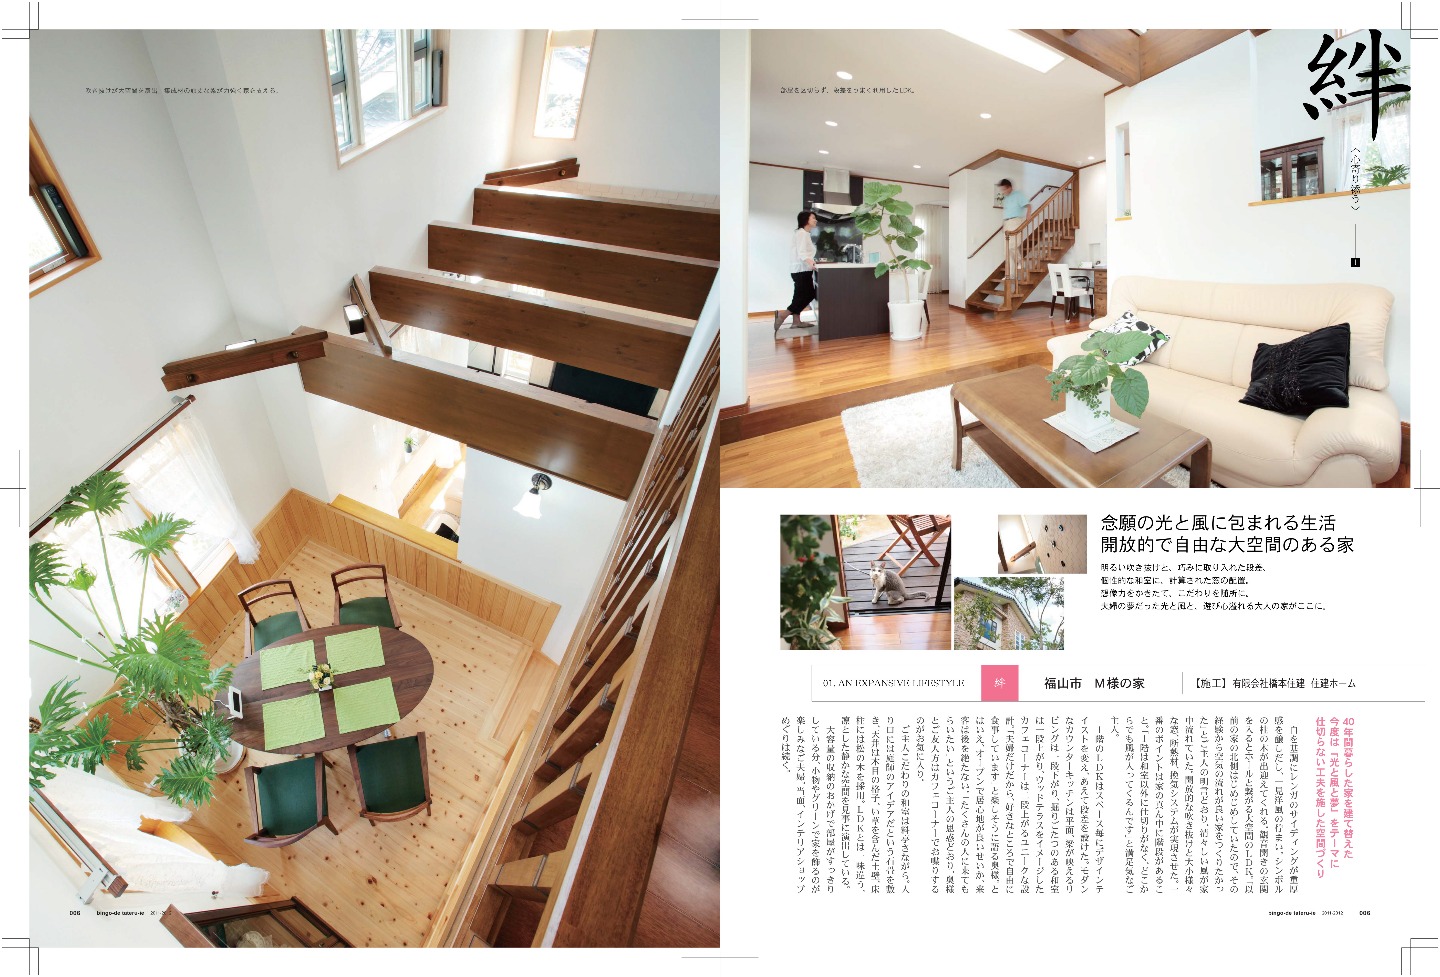 2011年発行「備後で建てる家」Vol.4